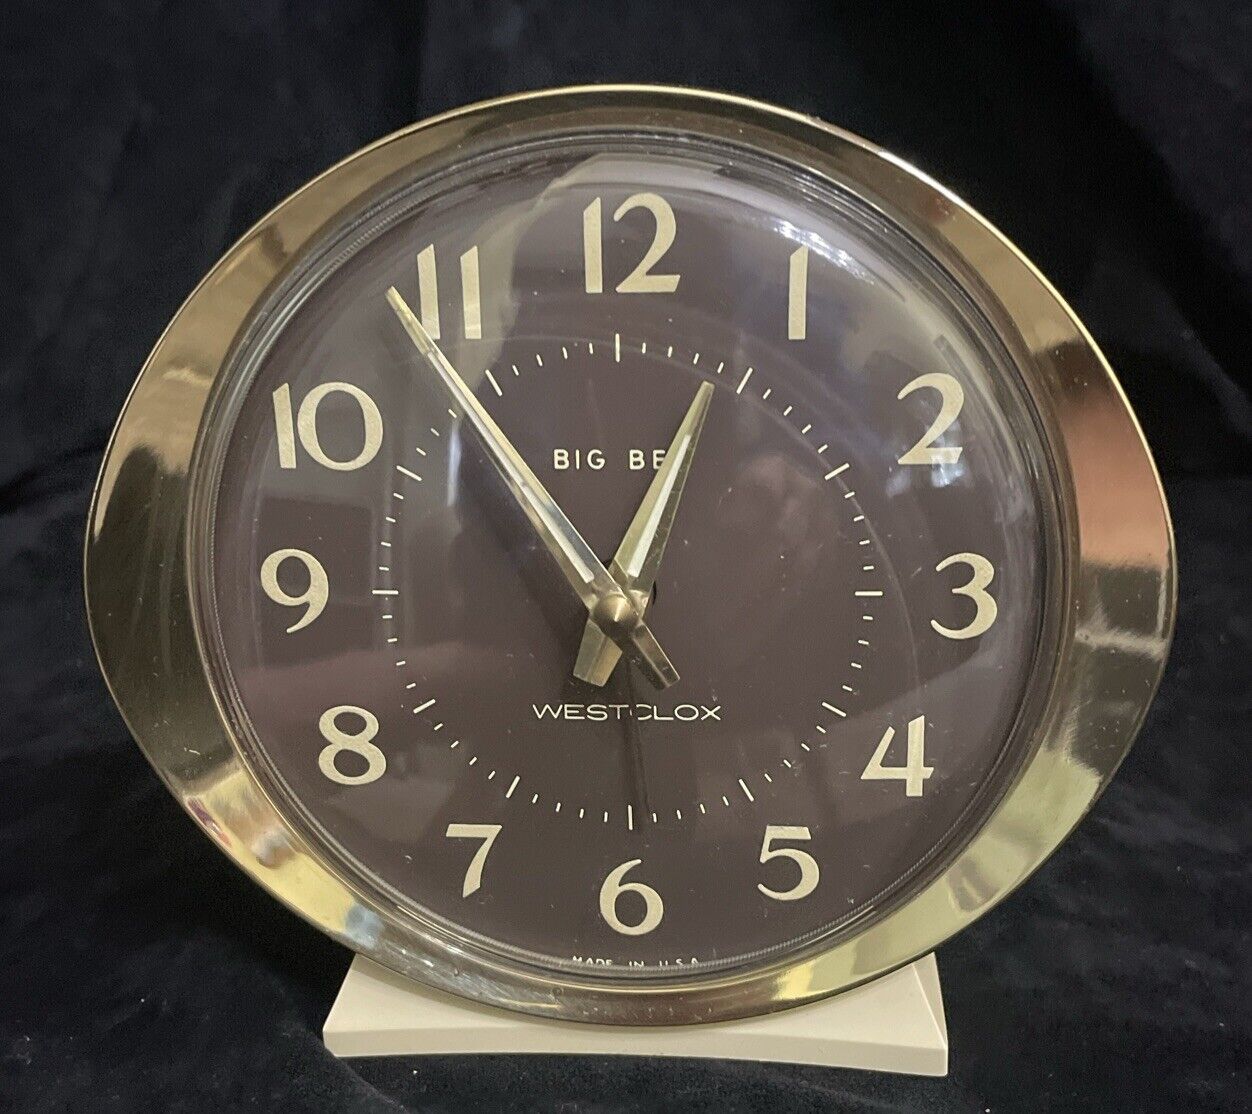 Vintage Westclox Big Ben Wind Up Alarm Clock Glow In The Dark Hands Works 